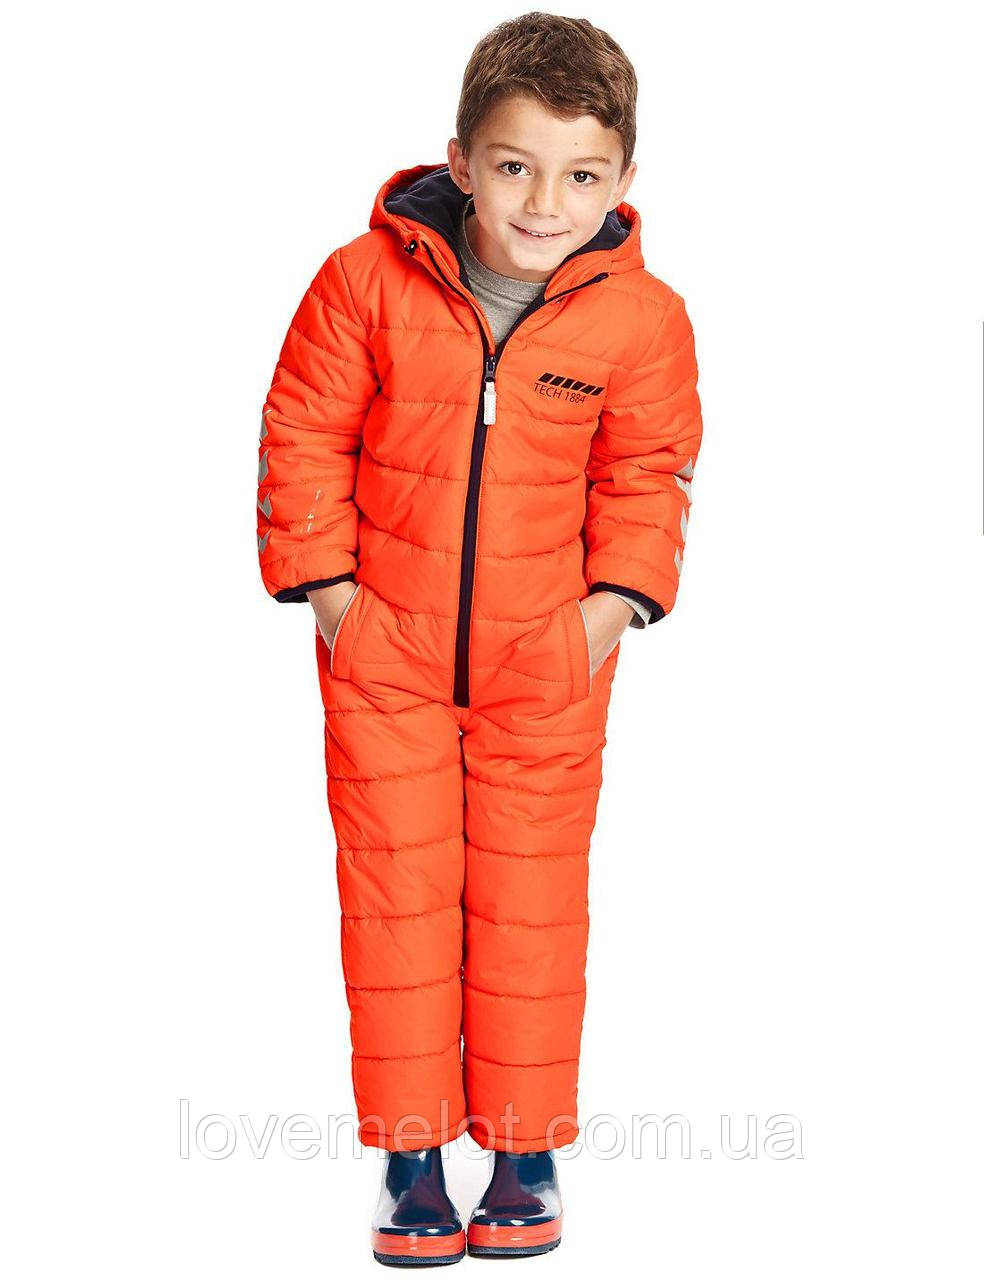 Детский комбинезон термо комбинезон для мальчика Marks&Spencer "Огонёк" на рост 86 и 92см